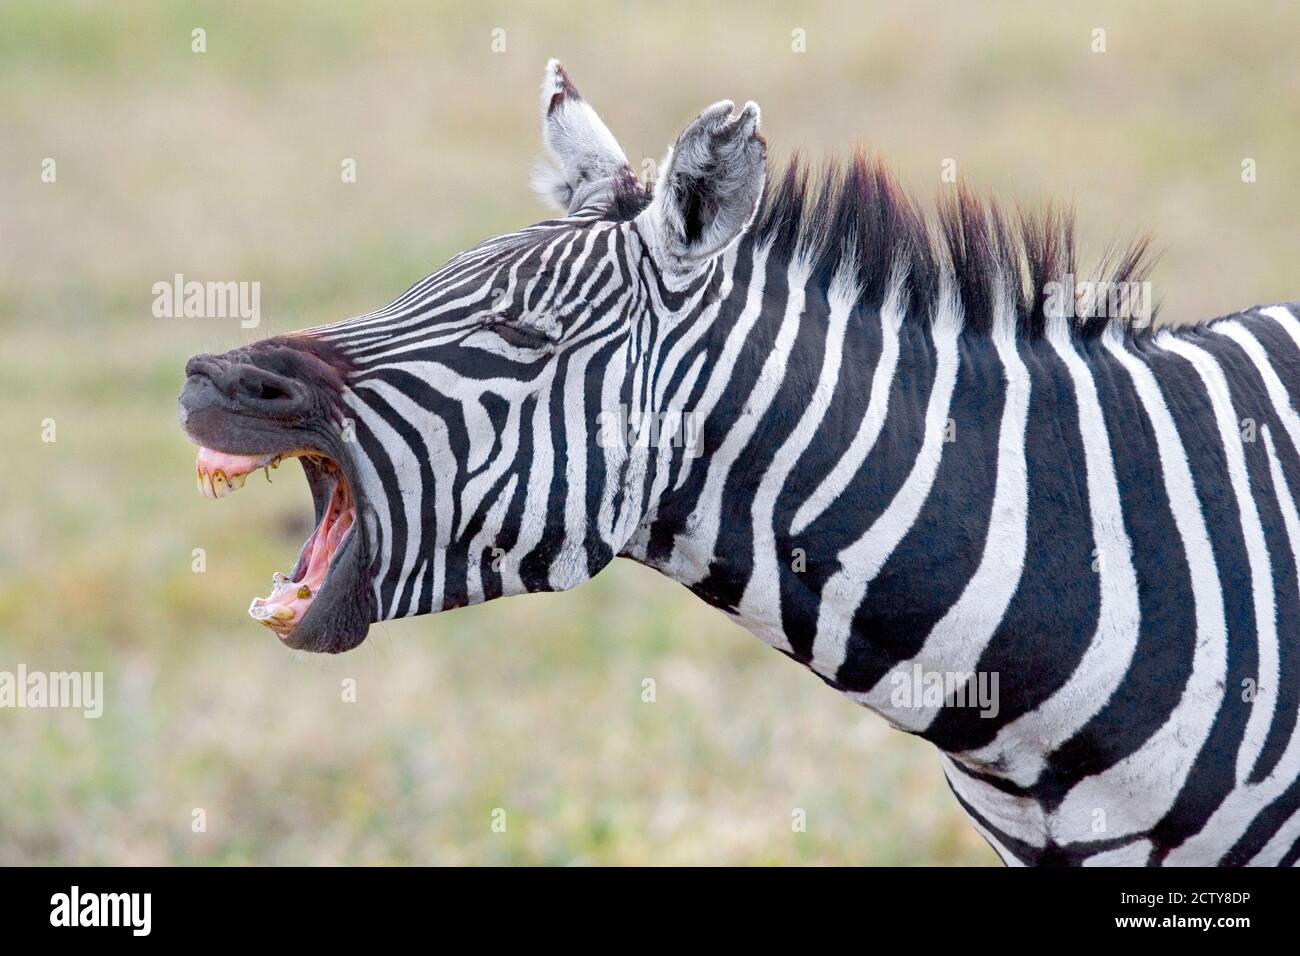 Close-up of a zebra braying, Ngorongoro Crater, Ngorongoro Conservation Area Tanzania Stock Photo